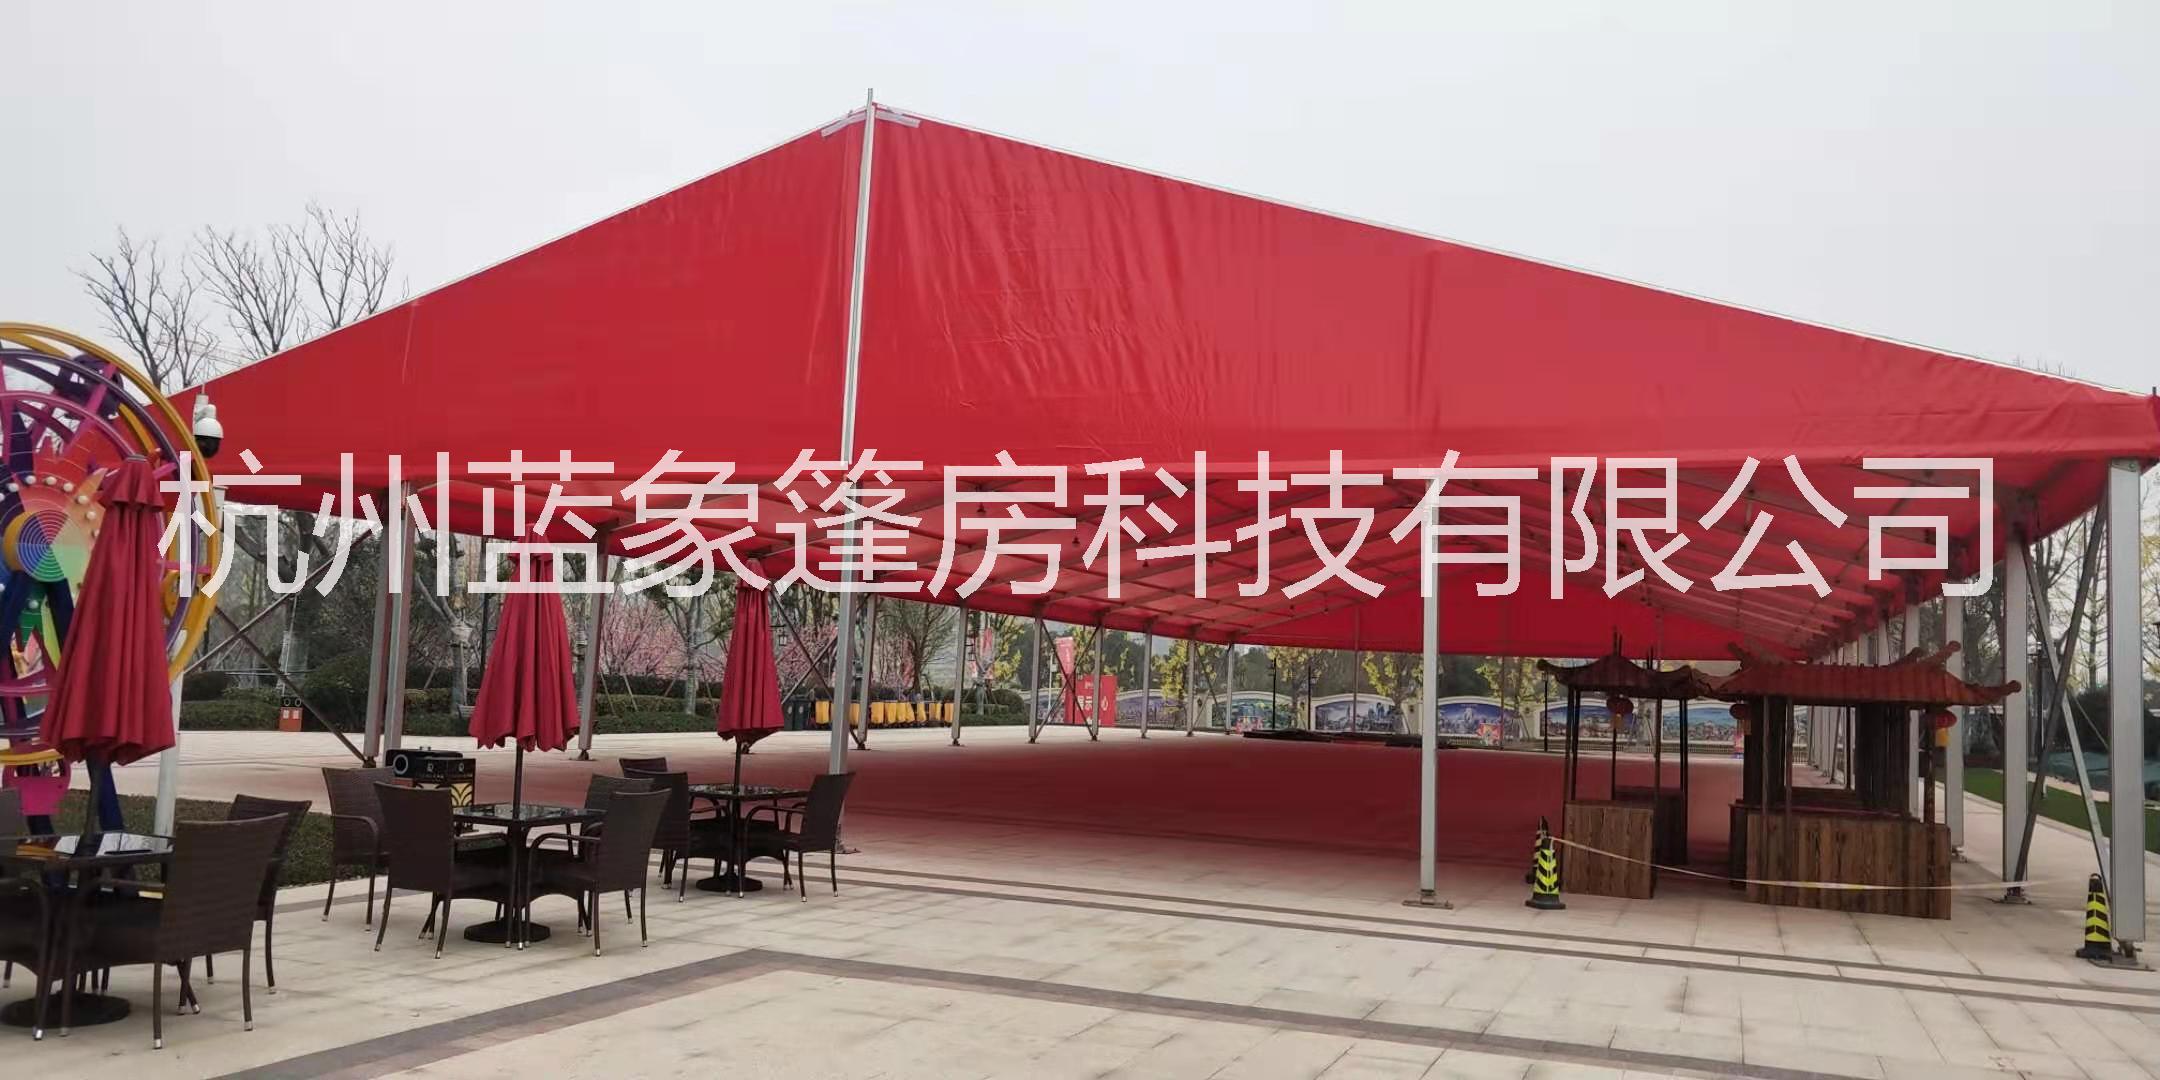 上海专业大型活动商务篷房搭建  篷房生产厂家婚礼庆典车展展示